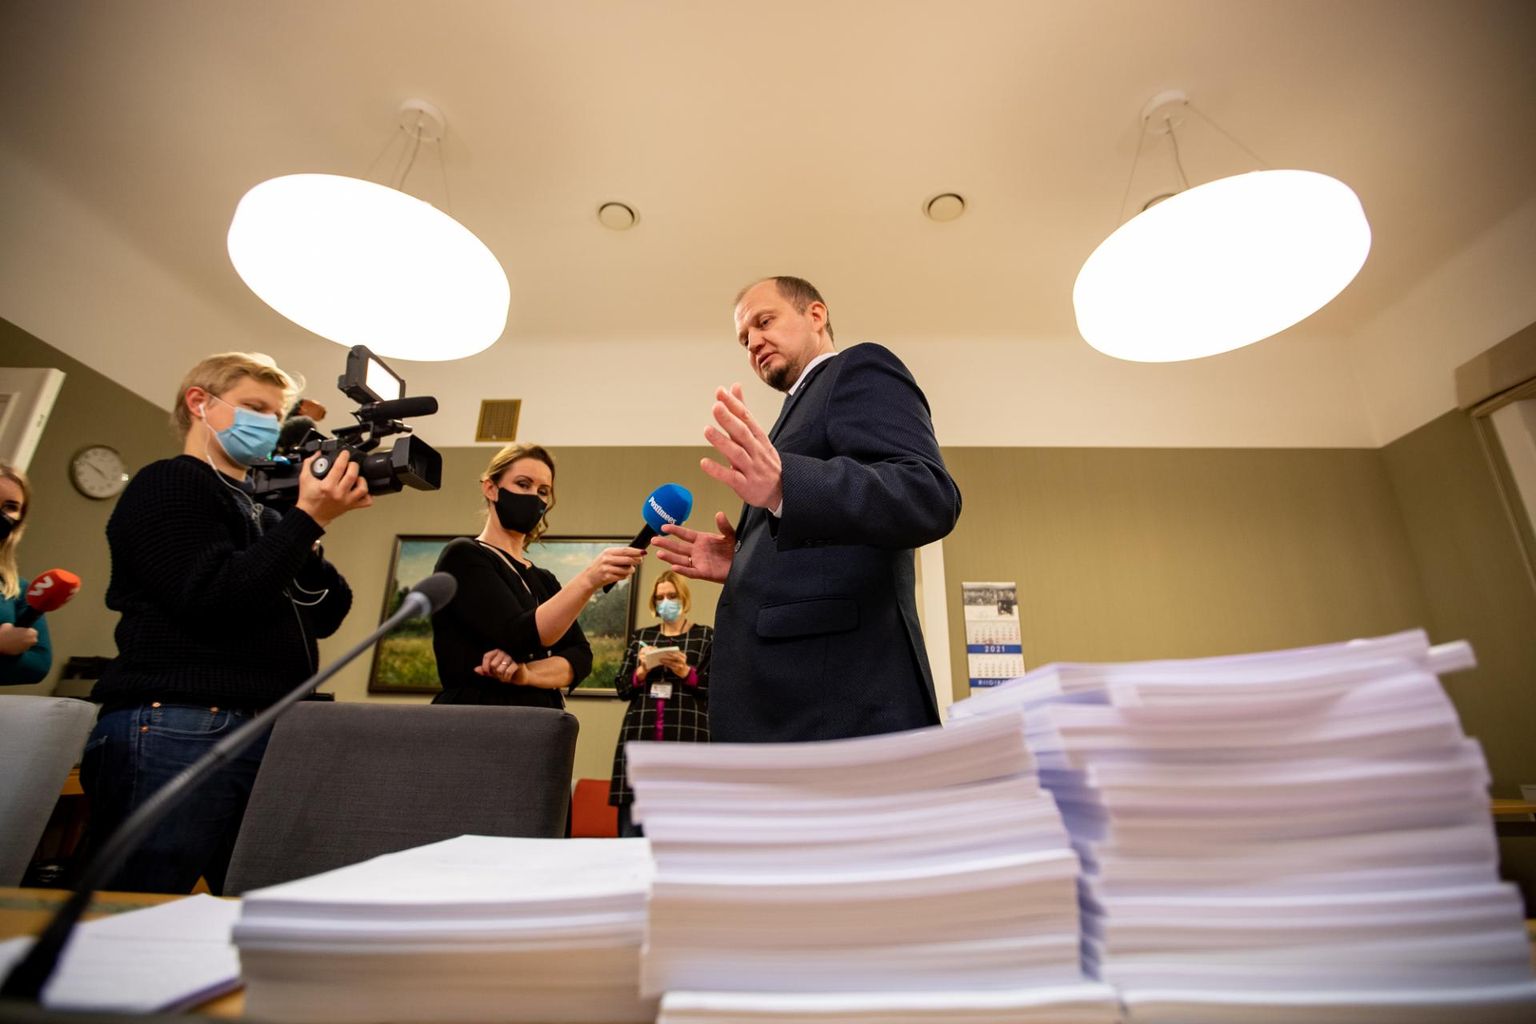 Opositsioon esitas rahvahääletuse eelnõule 9480 muudatusettepanekut, et nurjata kevadeks plaanitud abielureferendum. Kui sotsiaaldemokraadid esitasid oma ettepanekud elektrooniliselt, siis Reformierakond viis enda muudatused paberil, et eelnõu menetlemist veel raskemaks teha. Ettepanekute kuhjast peab läbi närima riigikogu põhiseaduskomisjoni esimees Anti Poolamets.